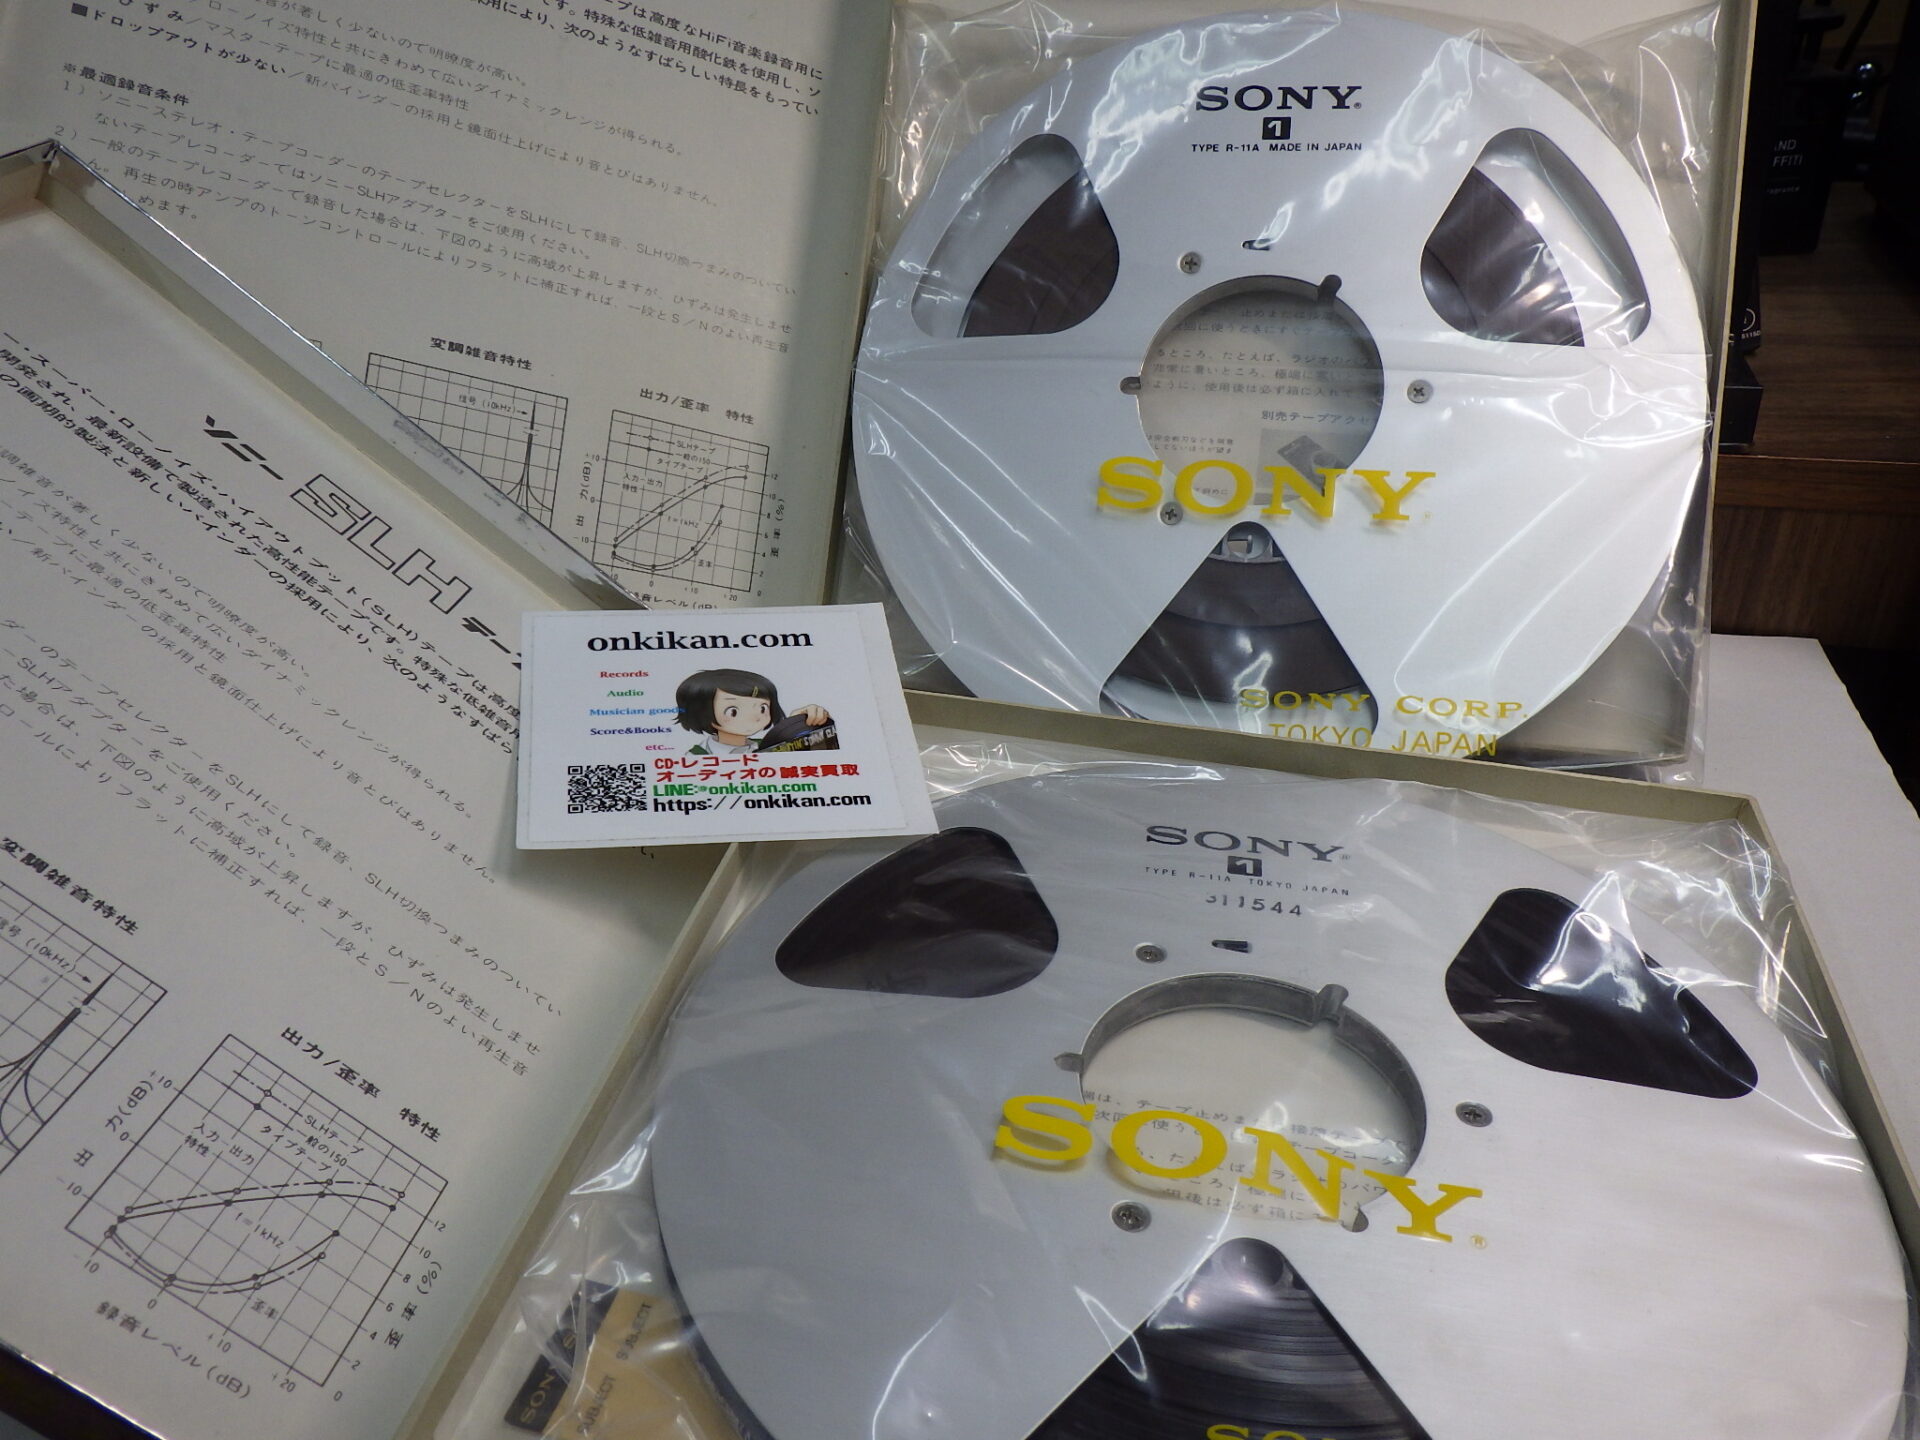 【オープンリールテープ買取】SONY TYPE R-11A - JAZZ&ROCK 